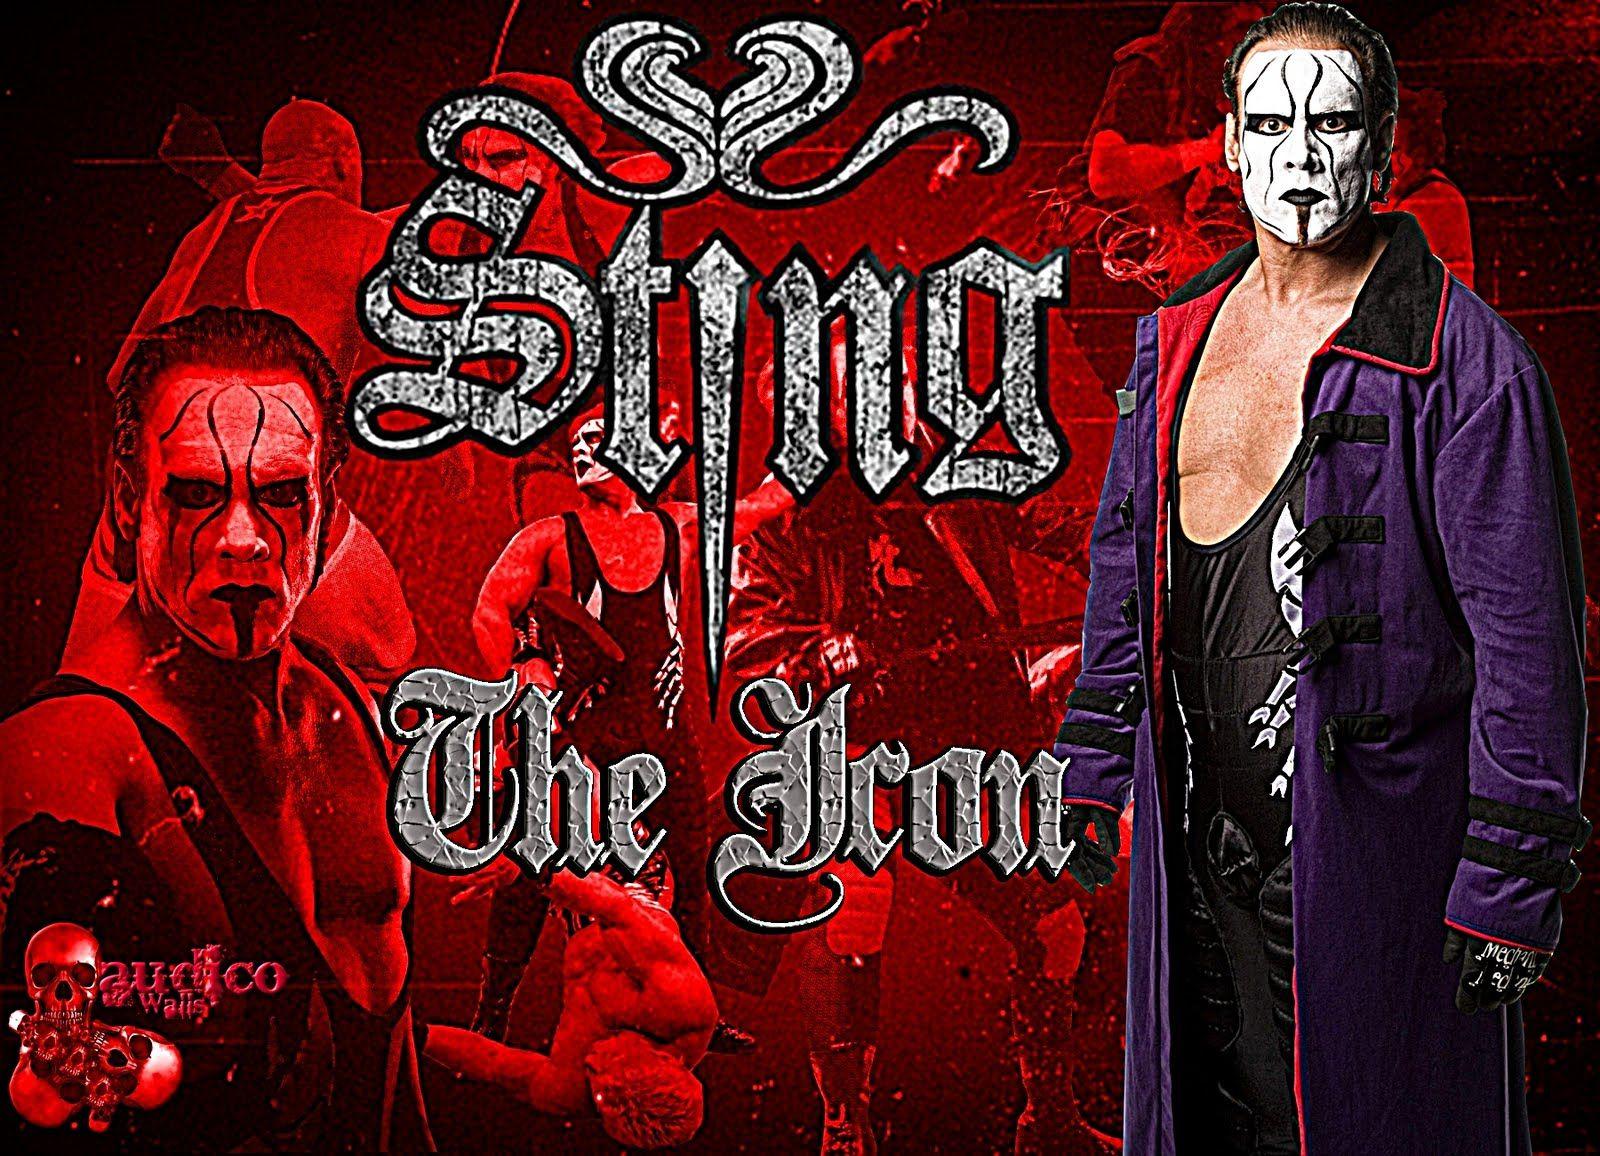 Sting TNA Wallpaper. Sting TNA Photo. Sting TNA Image